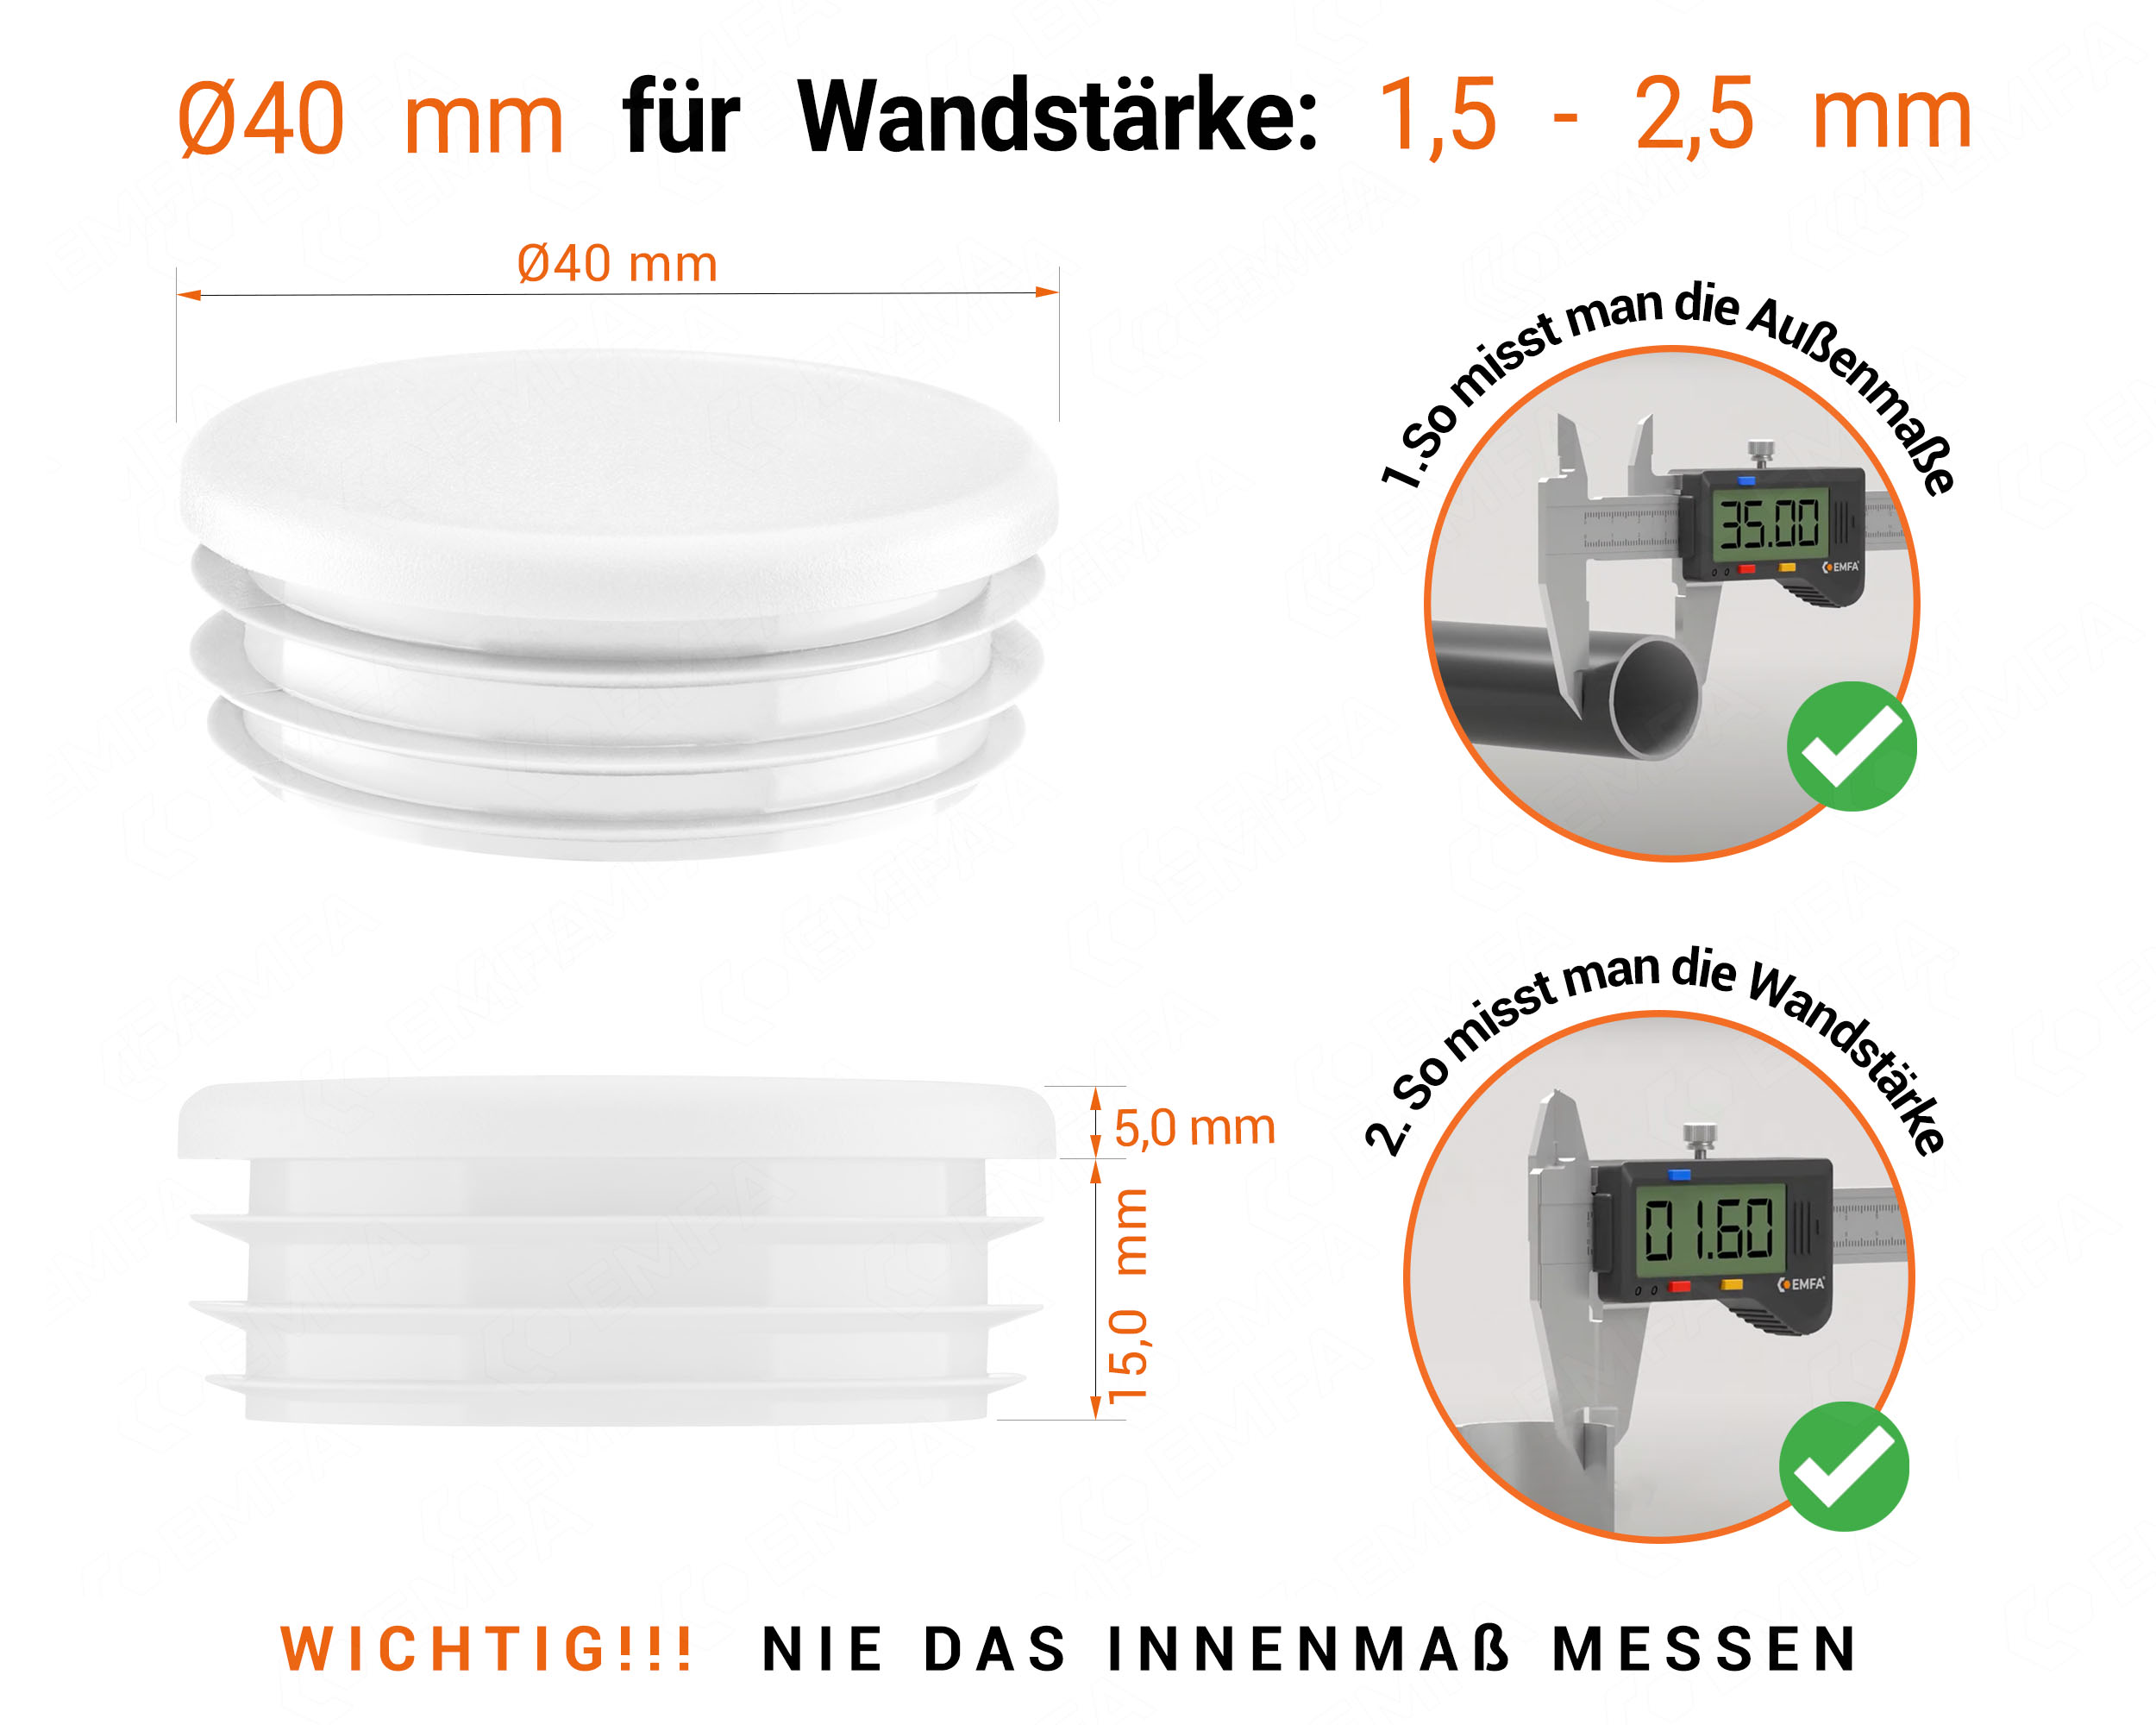 Weiße Endkappe für Rundrohre in der Größe 40 mm mit technischen Abmessungen und Anleitung für korrekte Messung